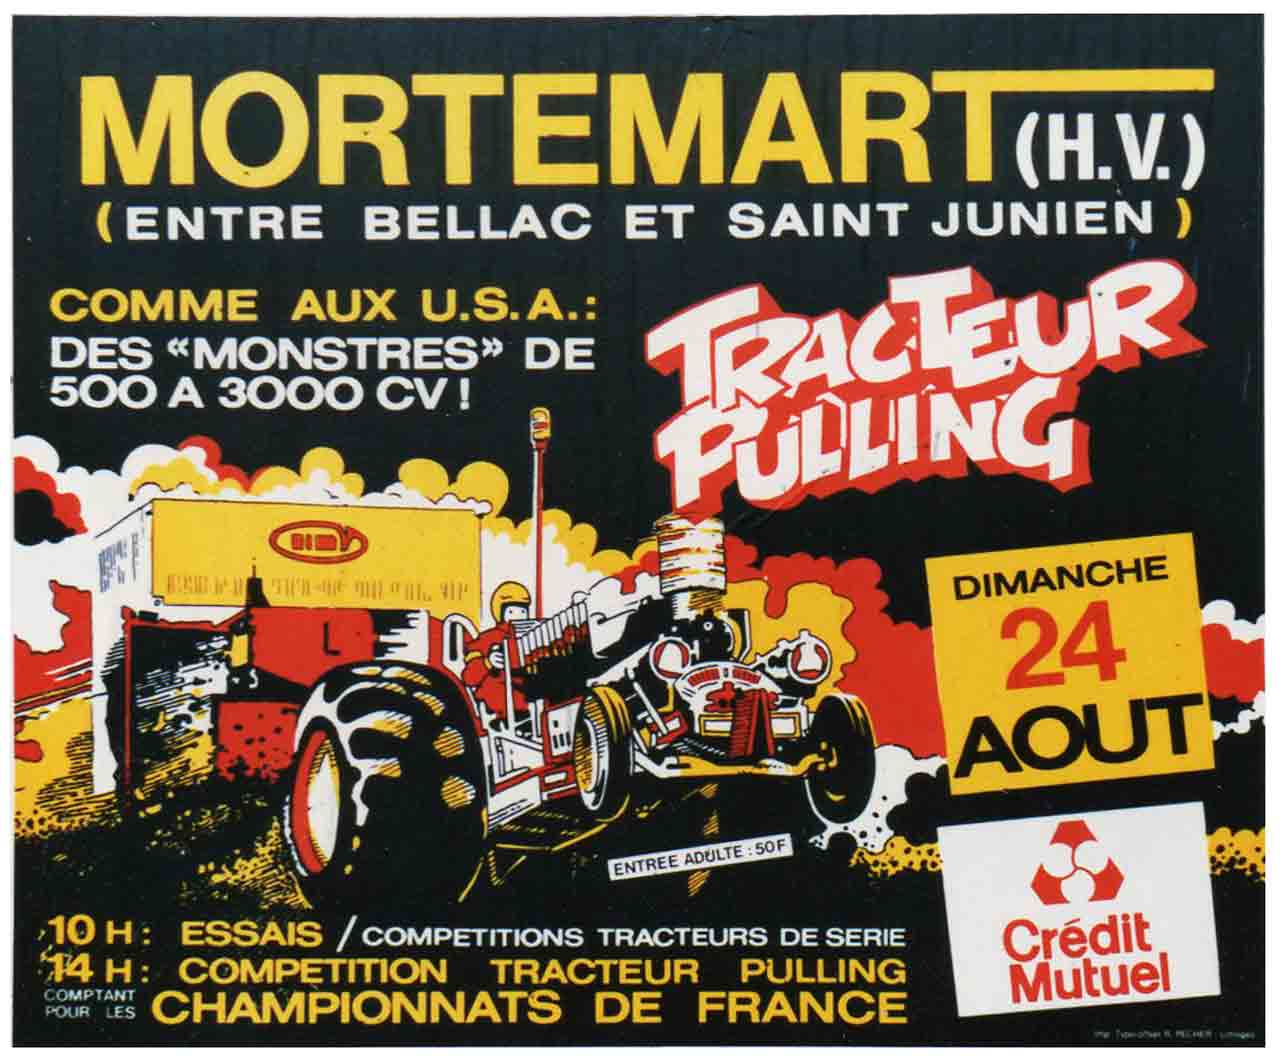 affiche cul de bus Tracteur Pulling Mortemart 1986 Marc-André